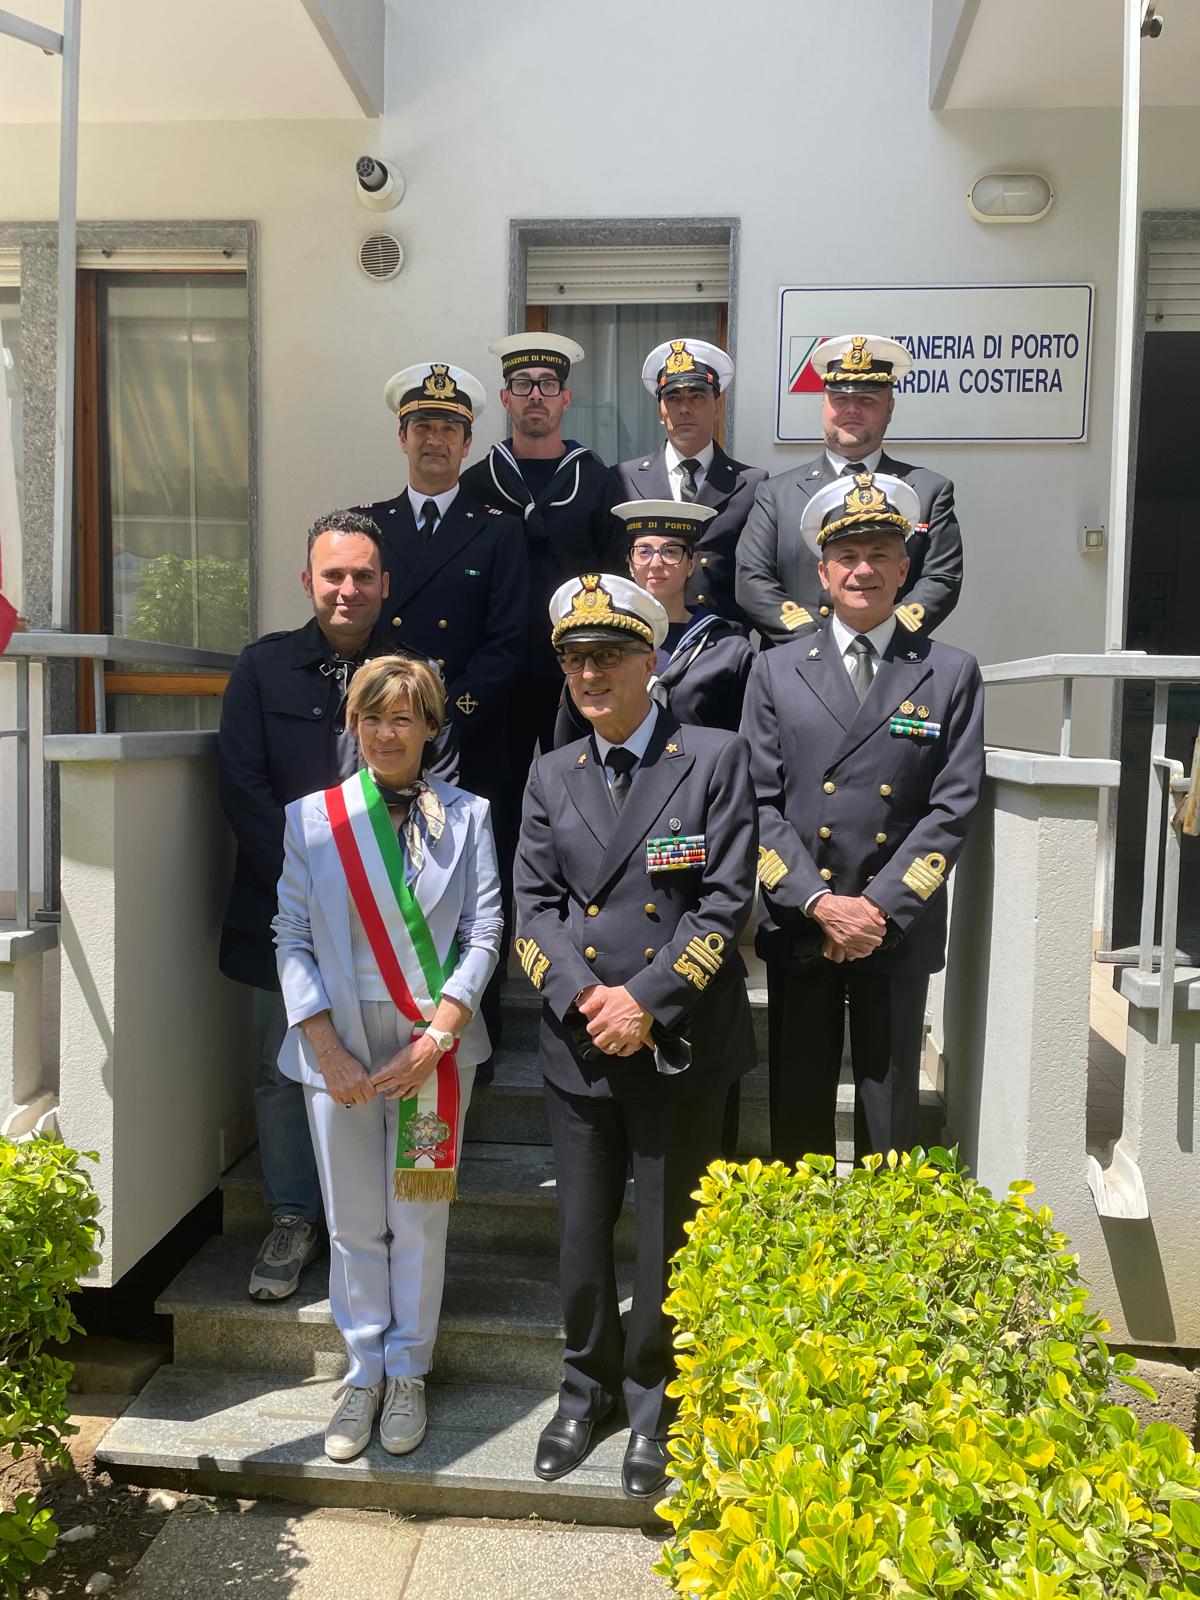 La sindaca Angelini e l’assessore Andruccioli hanno portato i saluti dell’amministrazione e della città all’ammiraglio ispettore capo Carlone